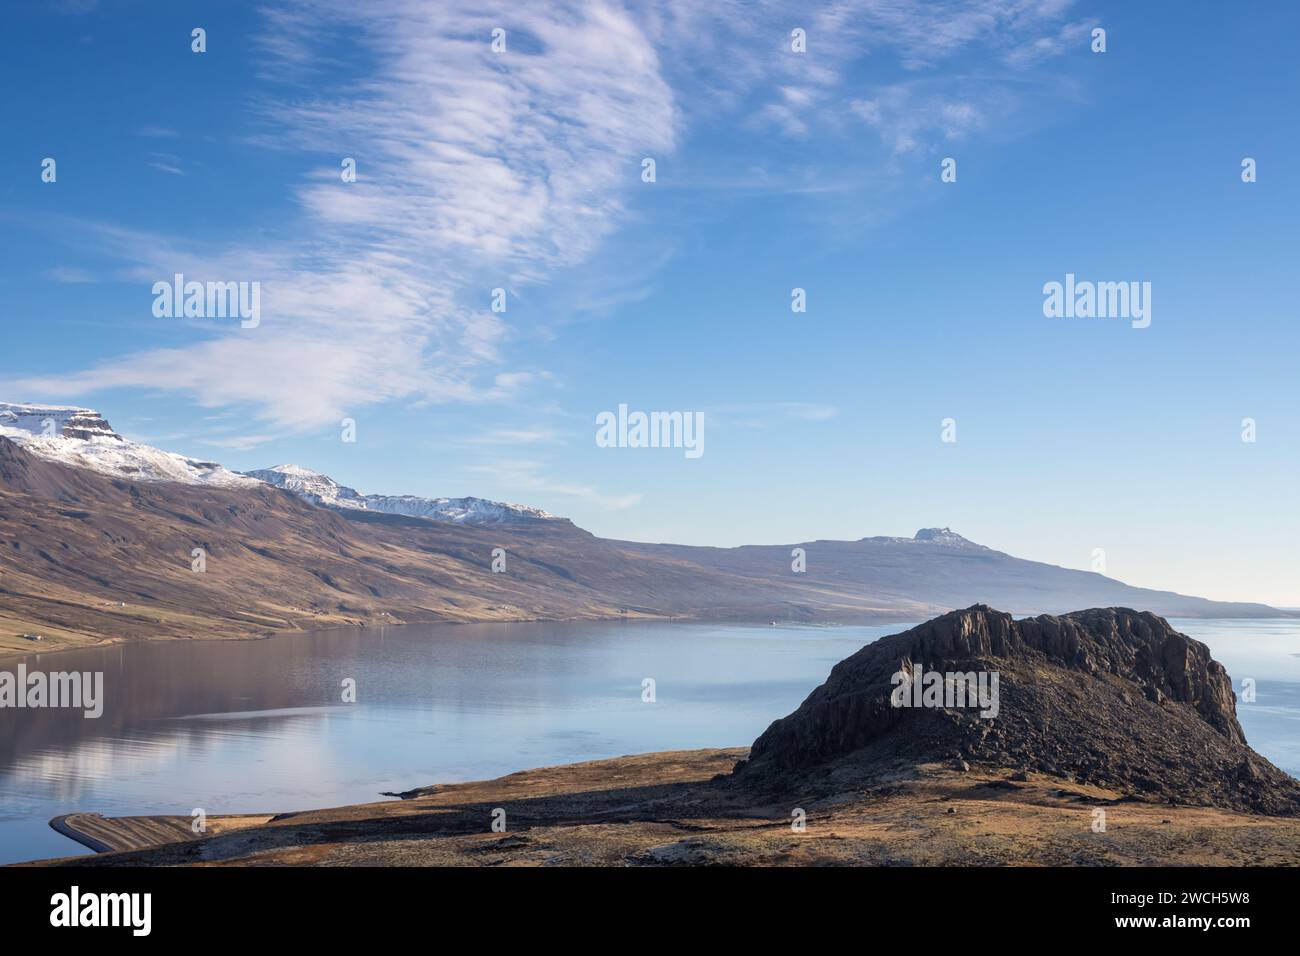 Giornata di sole con cielo blu e nuvole di luce. Fiordo circondato da prati e montagne con un colore autunnale della vegetazione. Eskifjordur, Icelan orientale Foto Stock